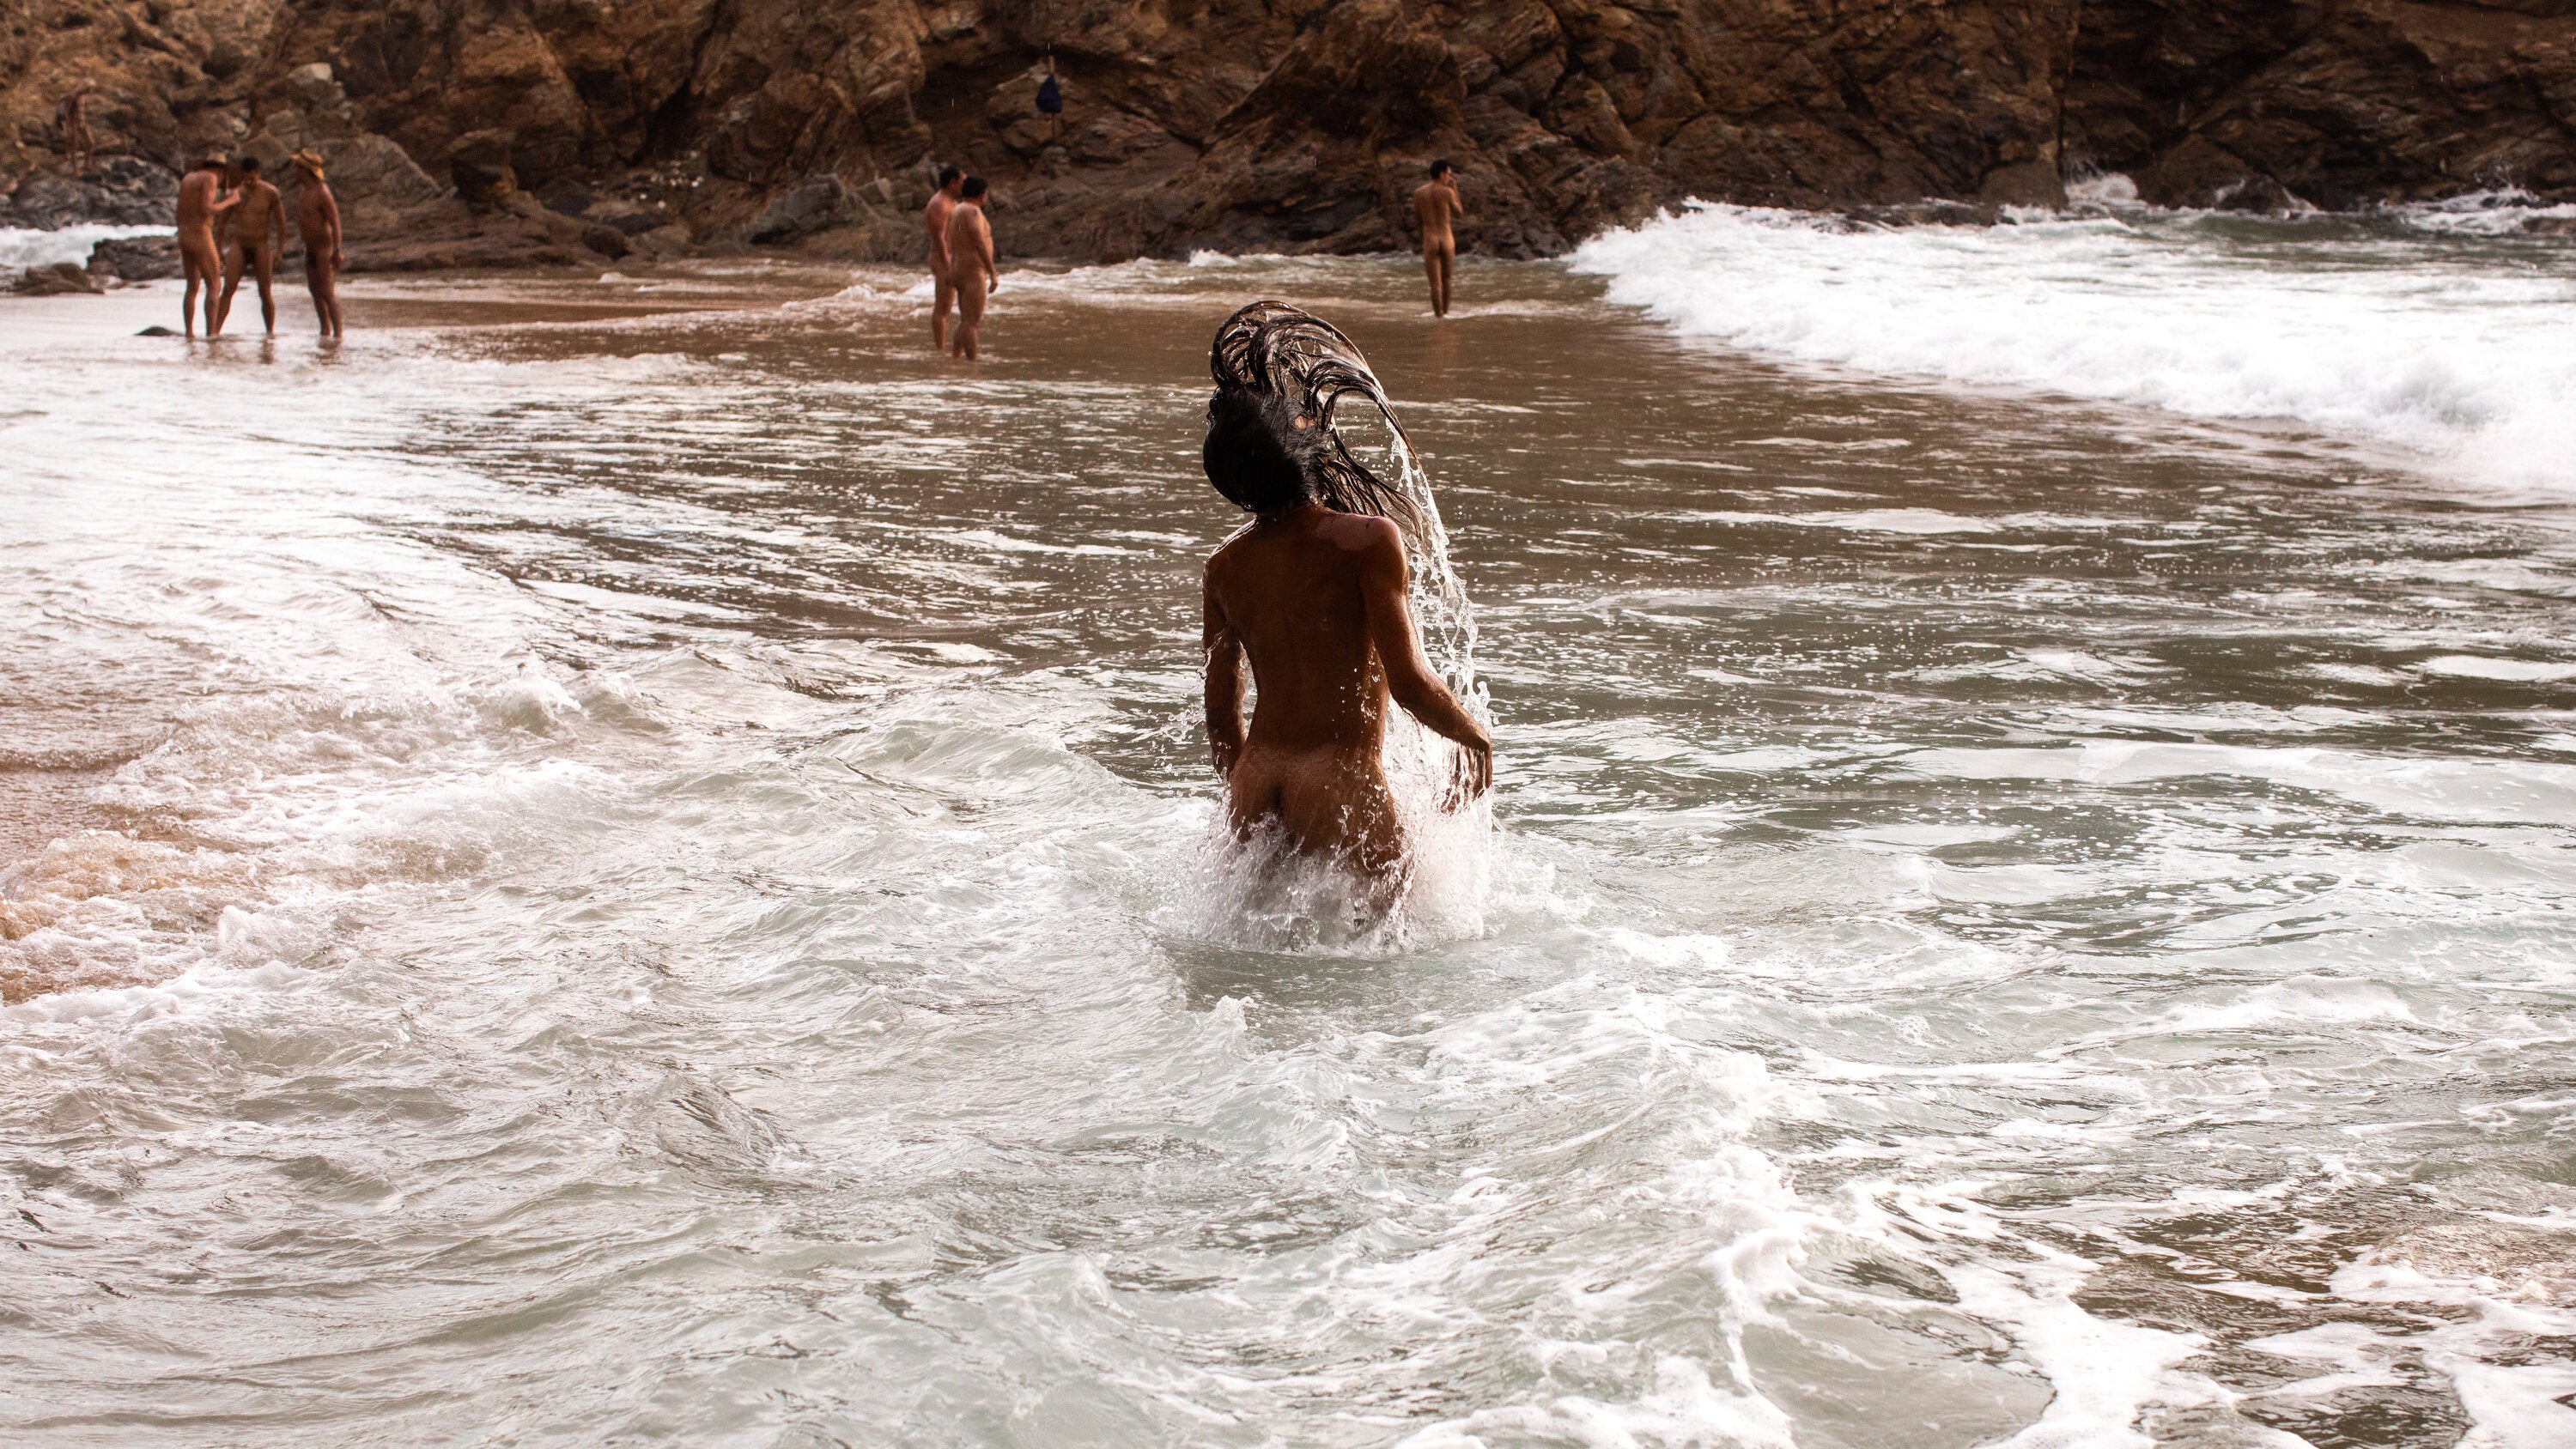 clover cruz share www nude beach com photos